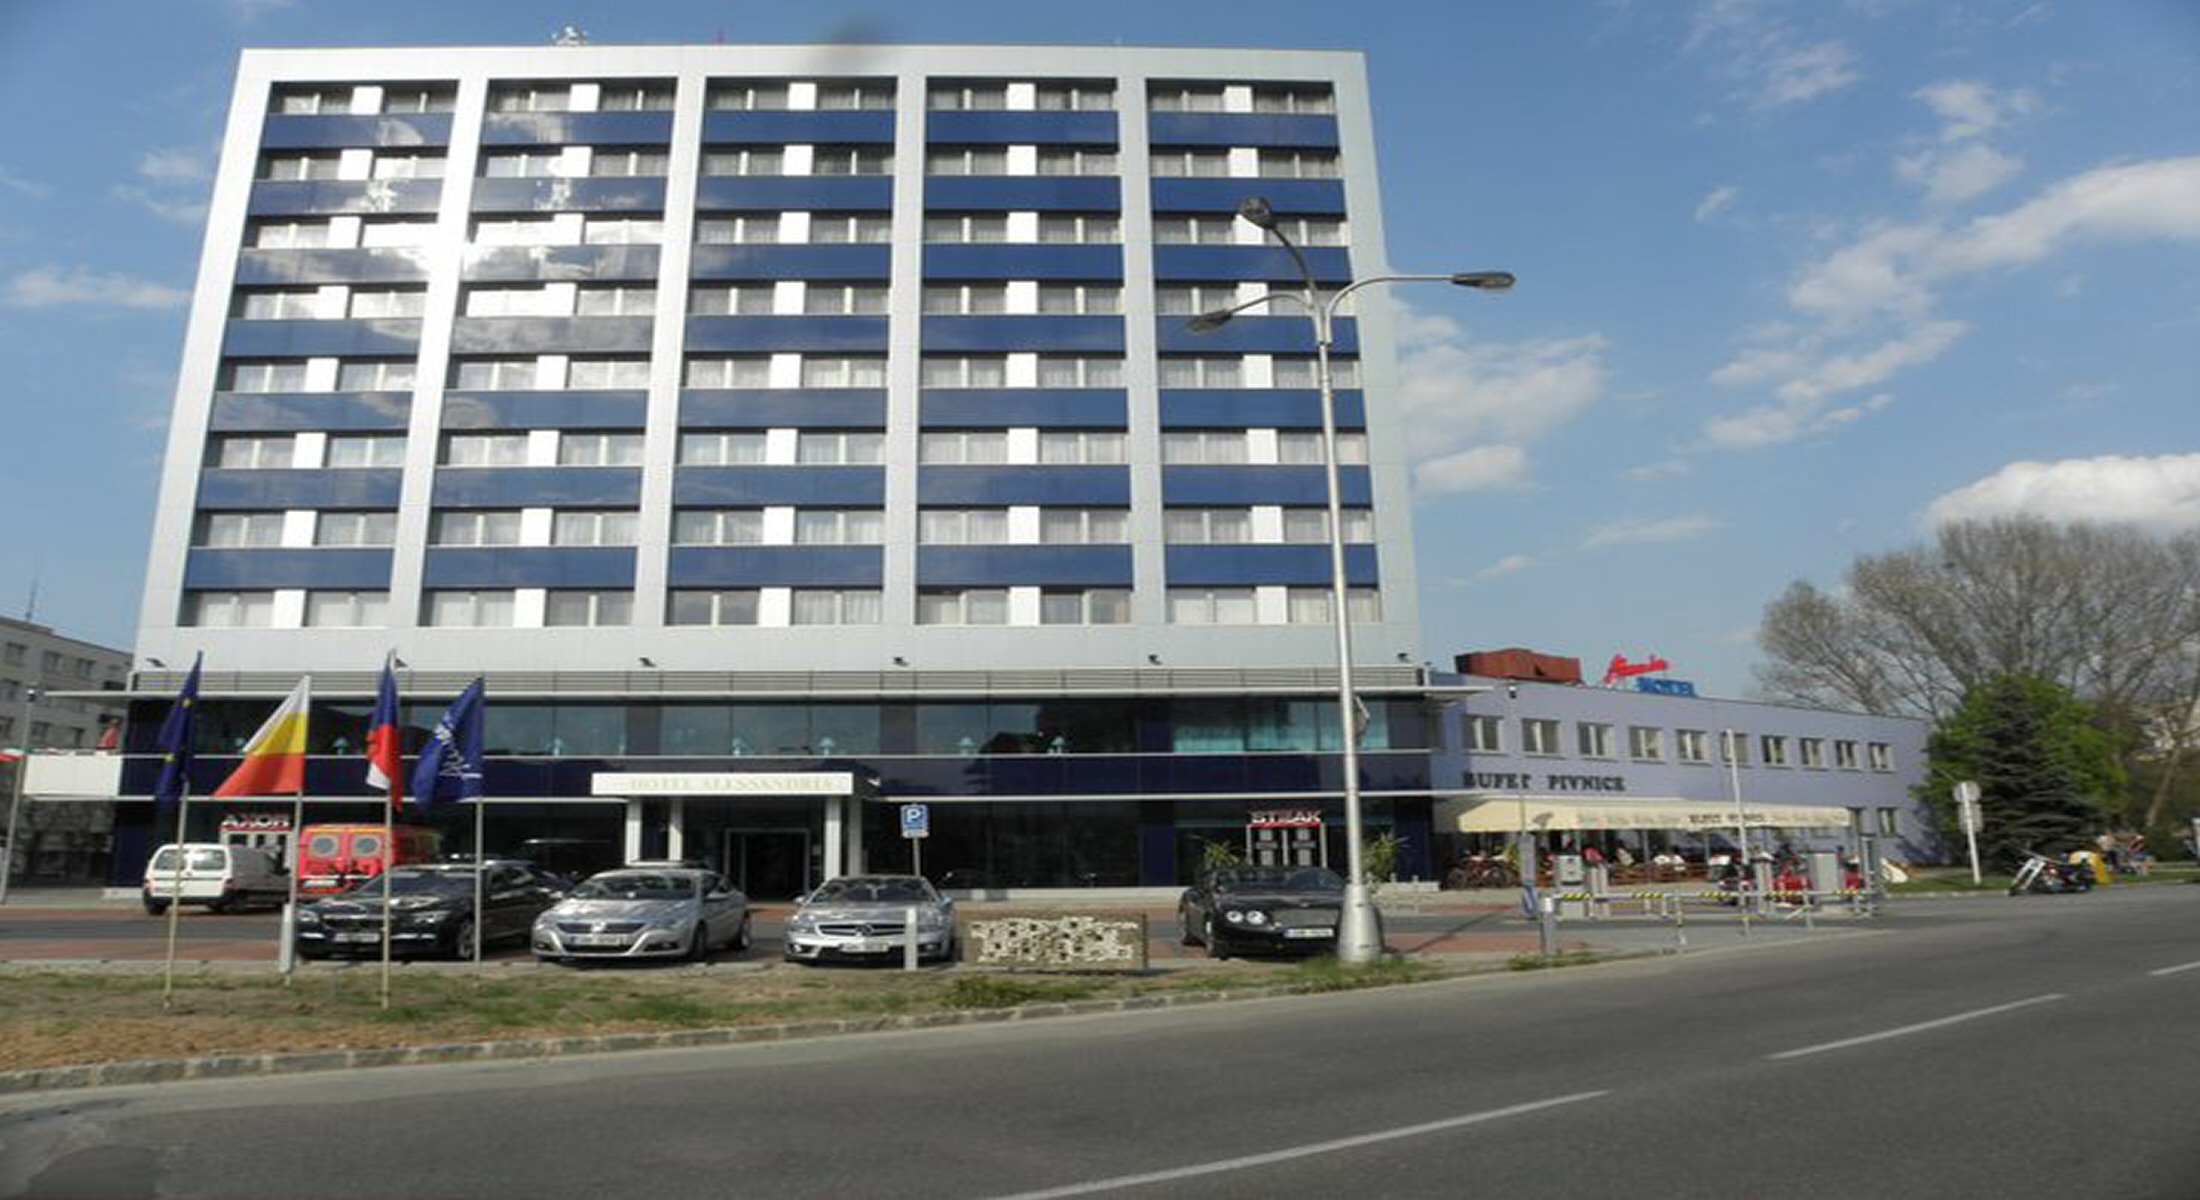 Hotel Alessandria photo 1 - full size